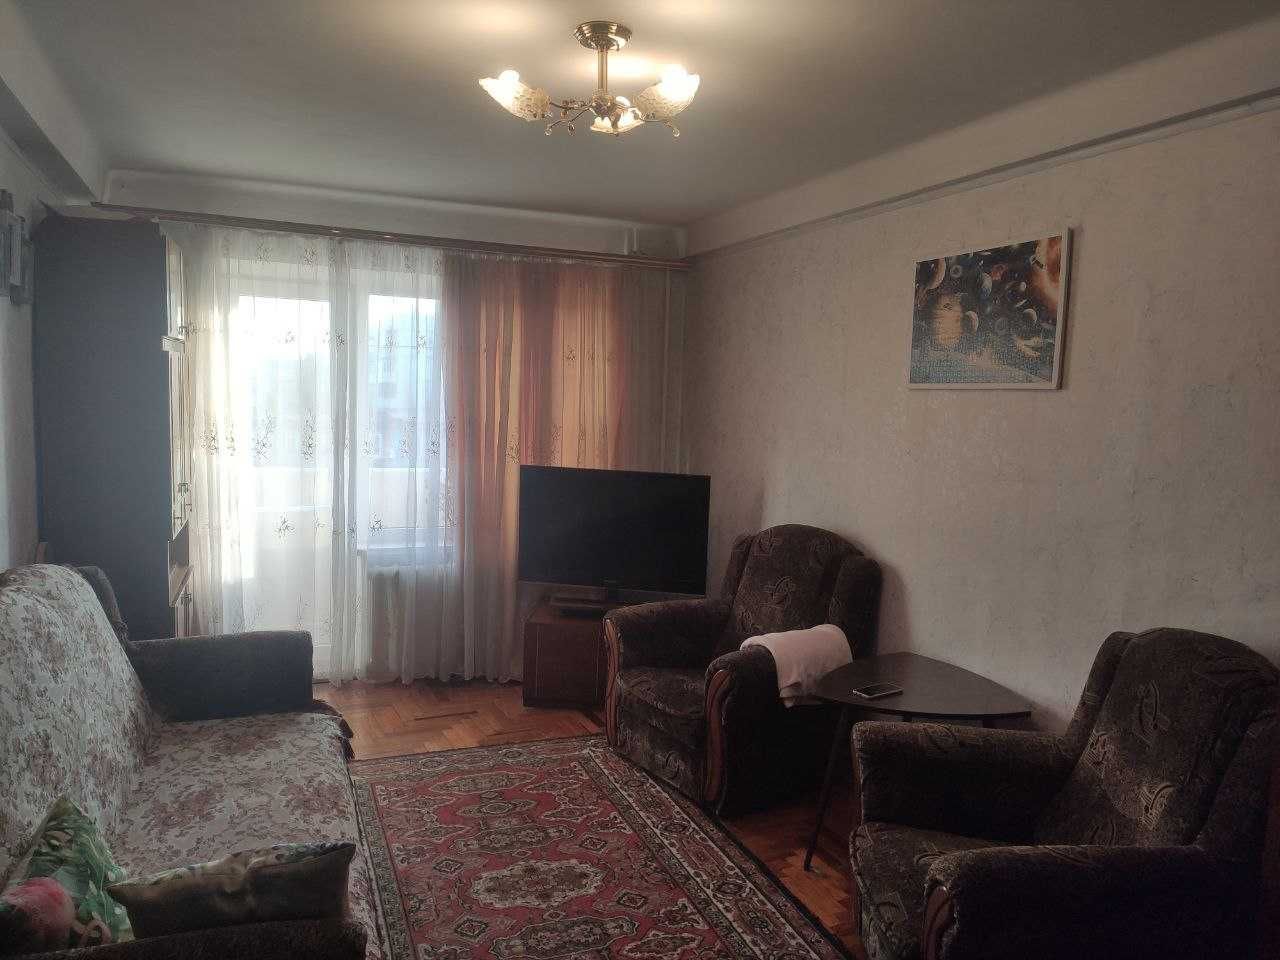 3х кімнатна квартира в Комунарському районі, Чумаченко 5/9.